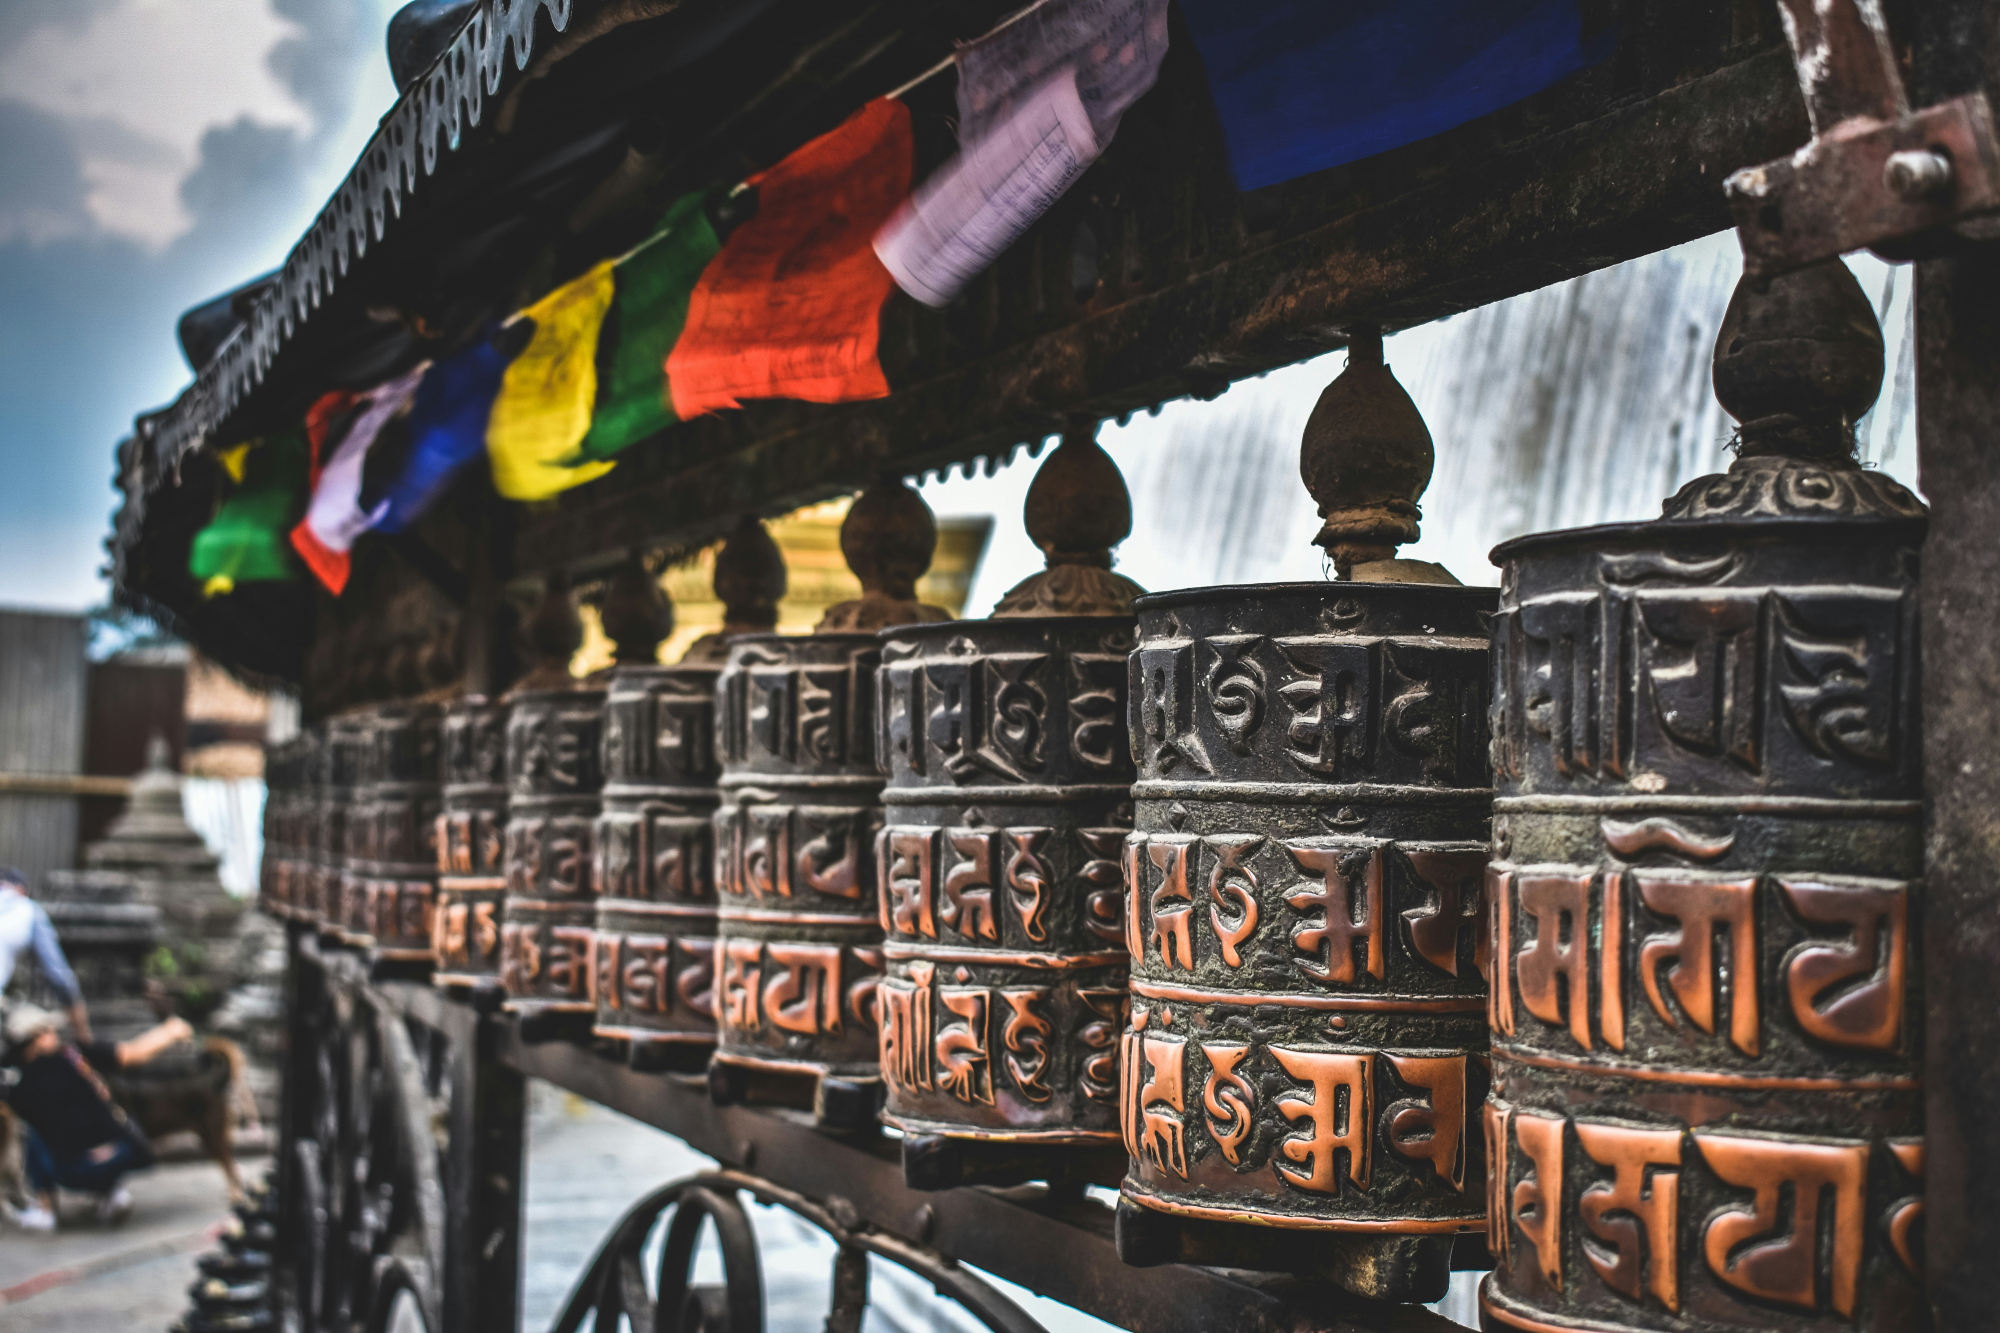 découvrez les trésors cachés du népal avec ses paysages magnifiques, ses cultures ancestrales et son riche patrimoine.